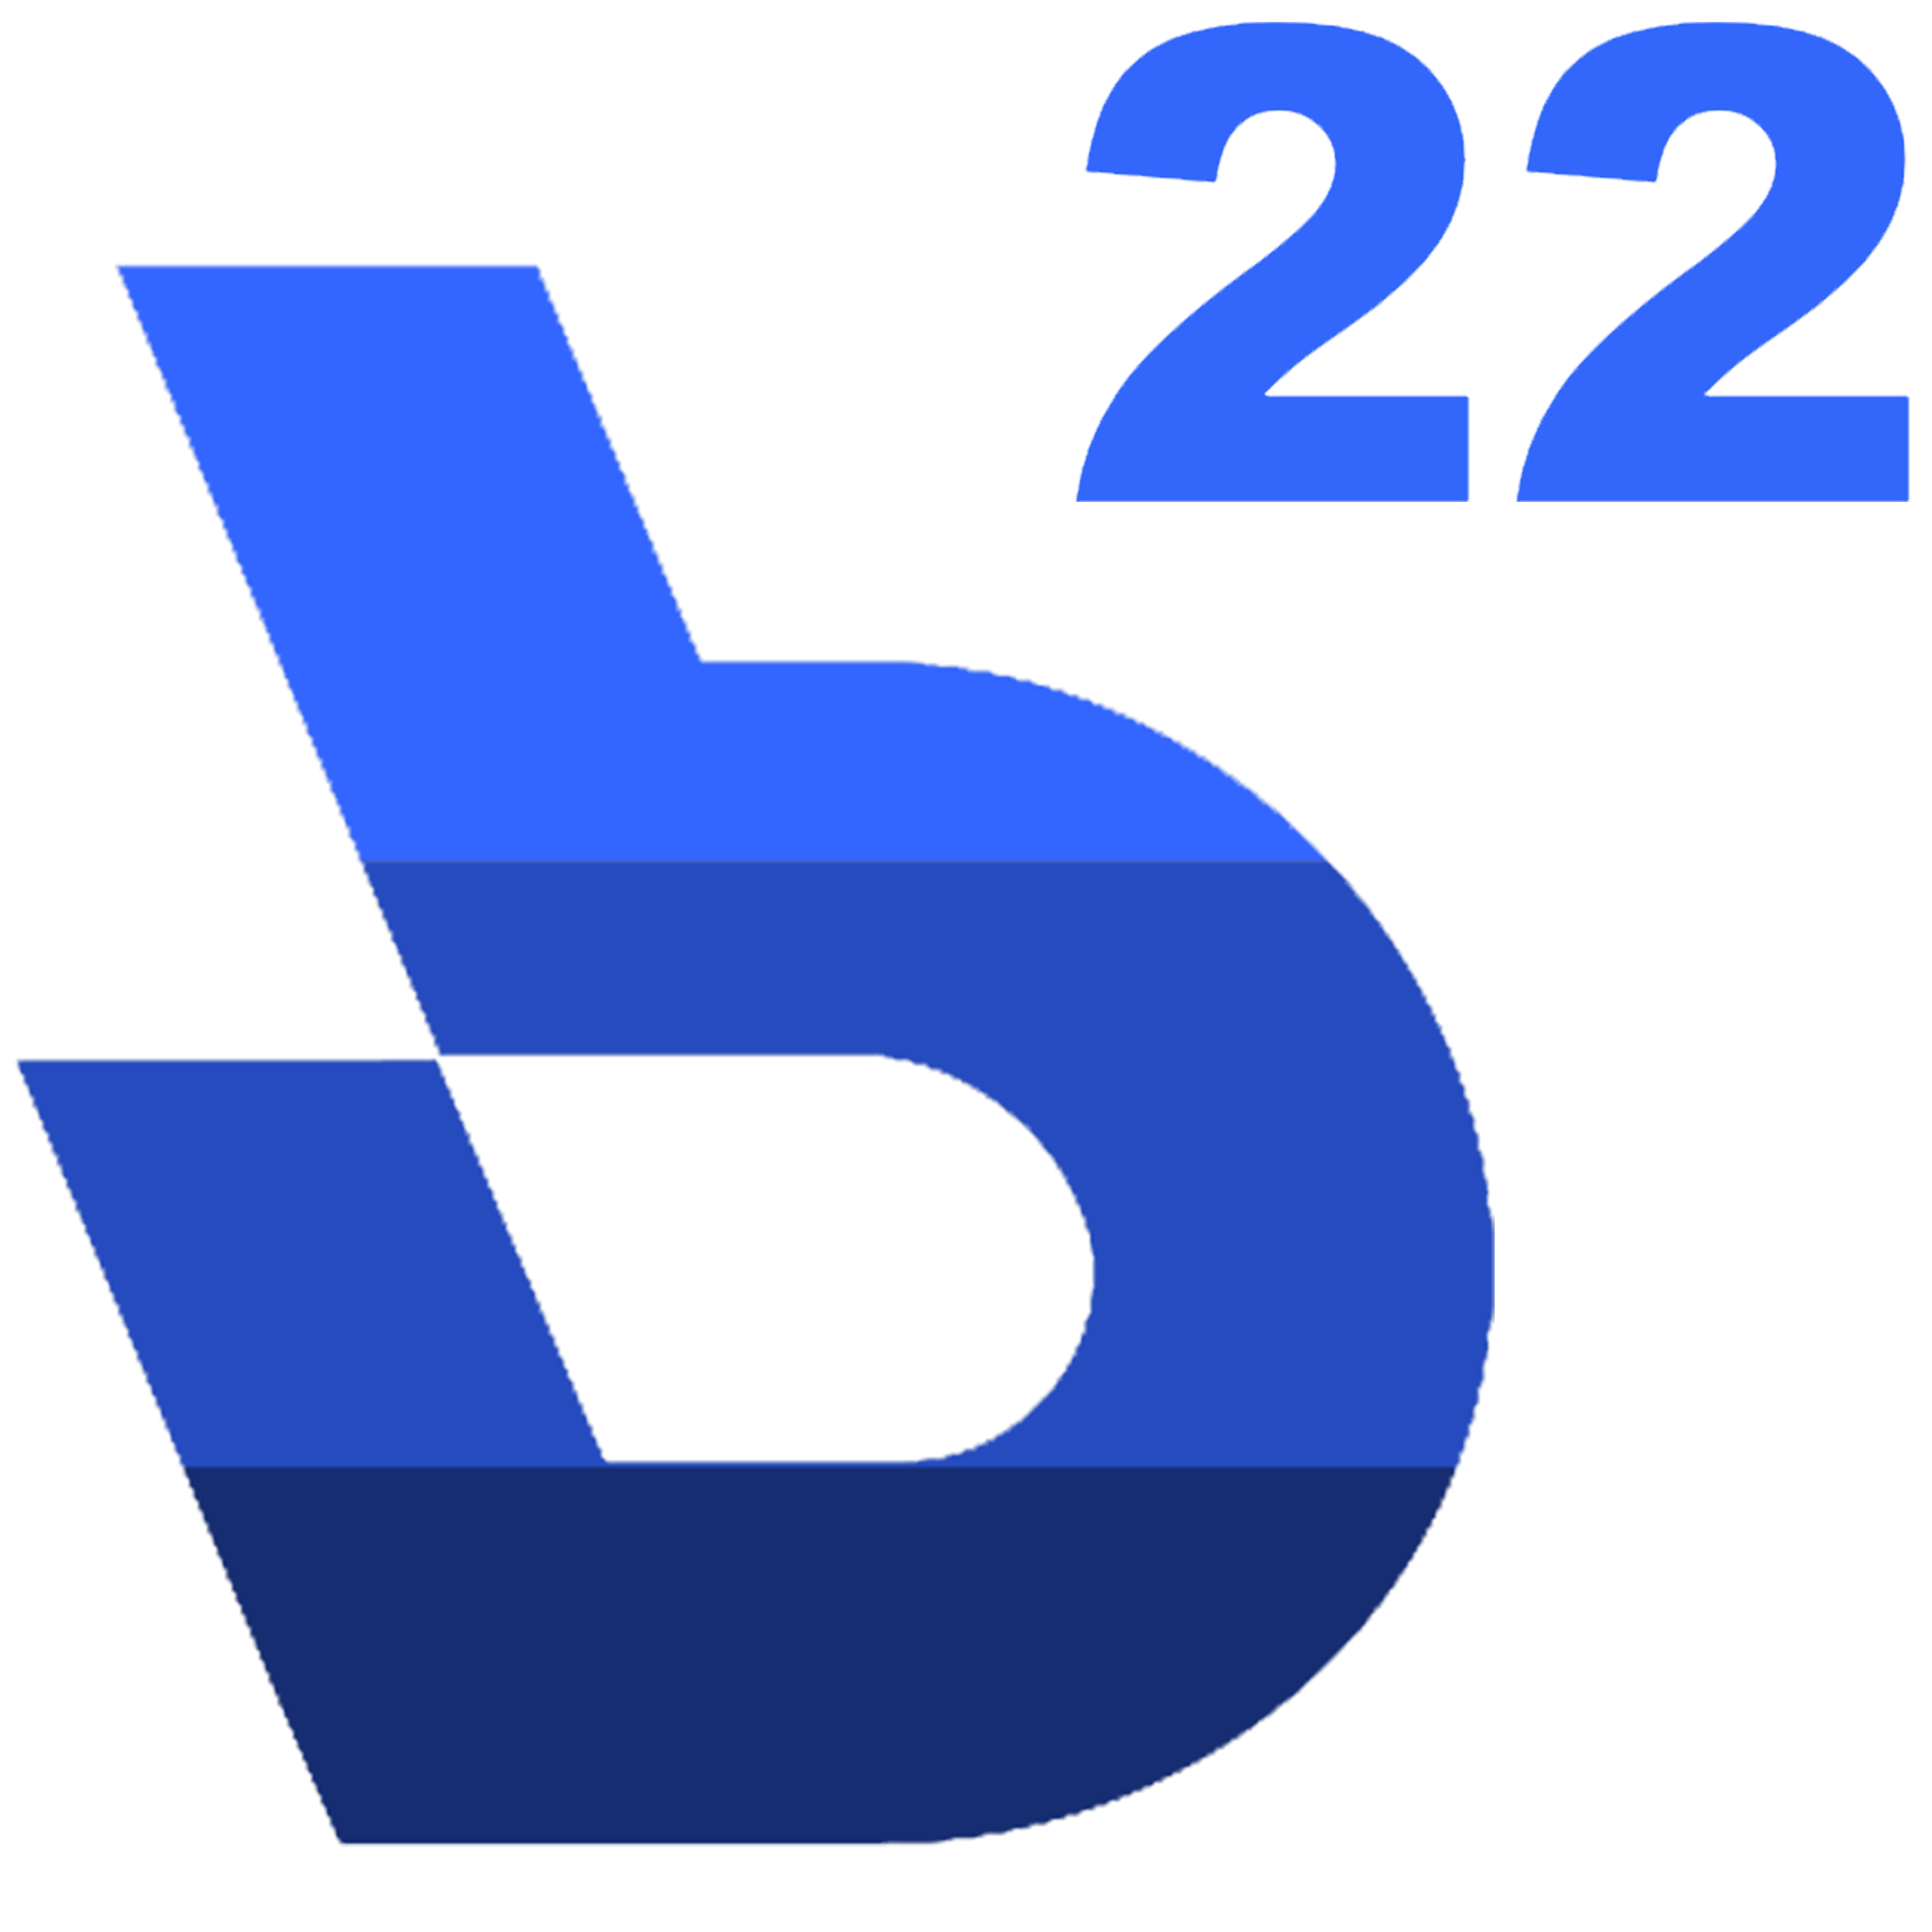 (c) B22.xyz